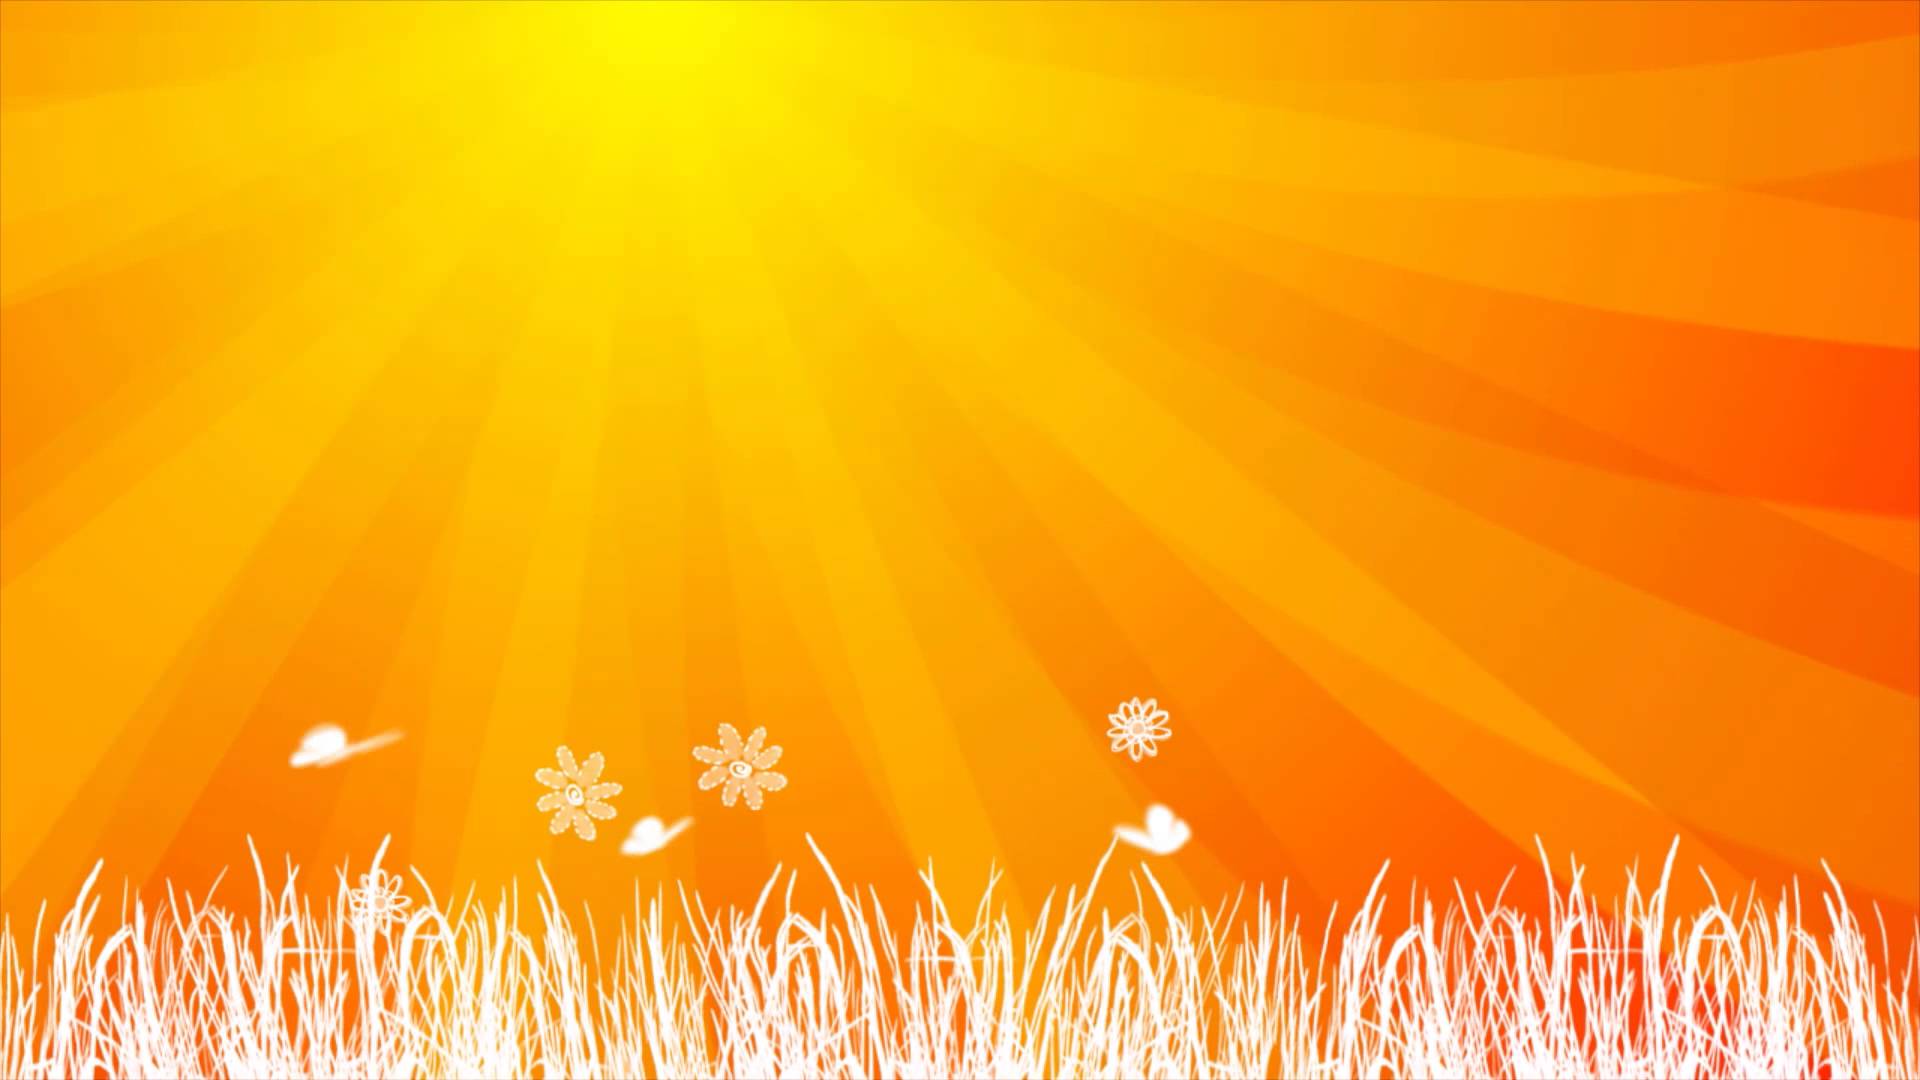 Orange Sun Background Animation HD - YouTube